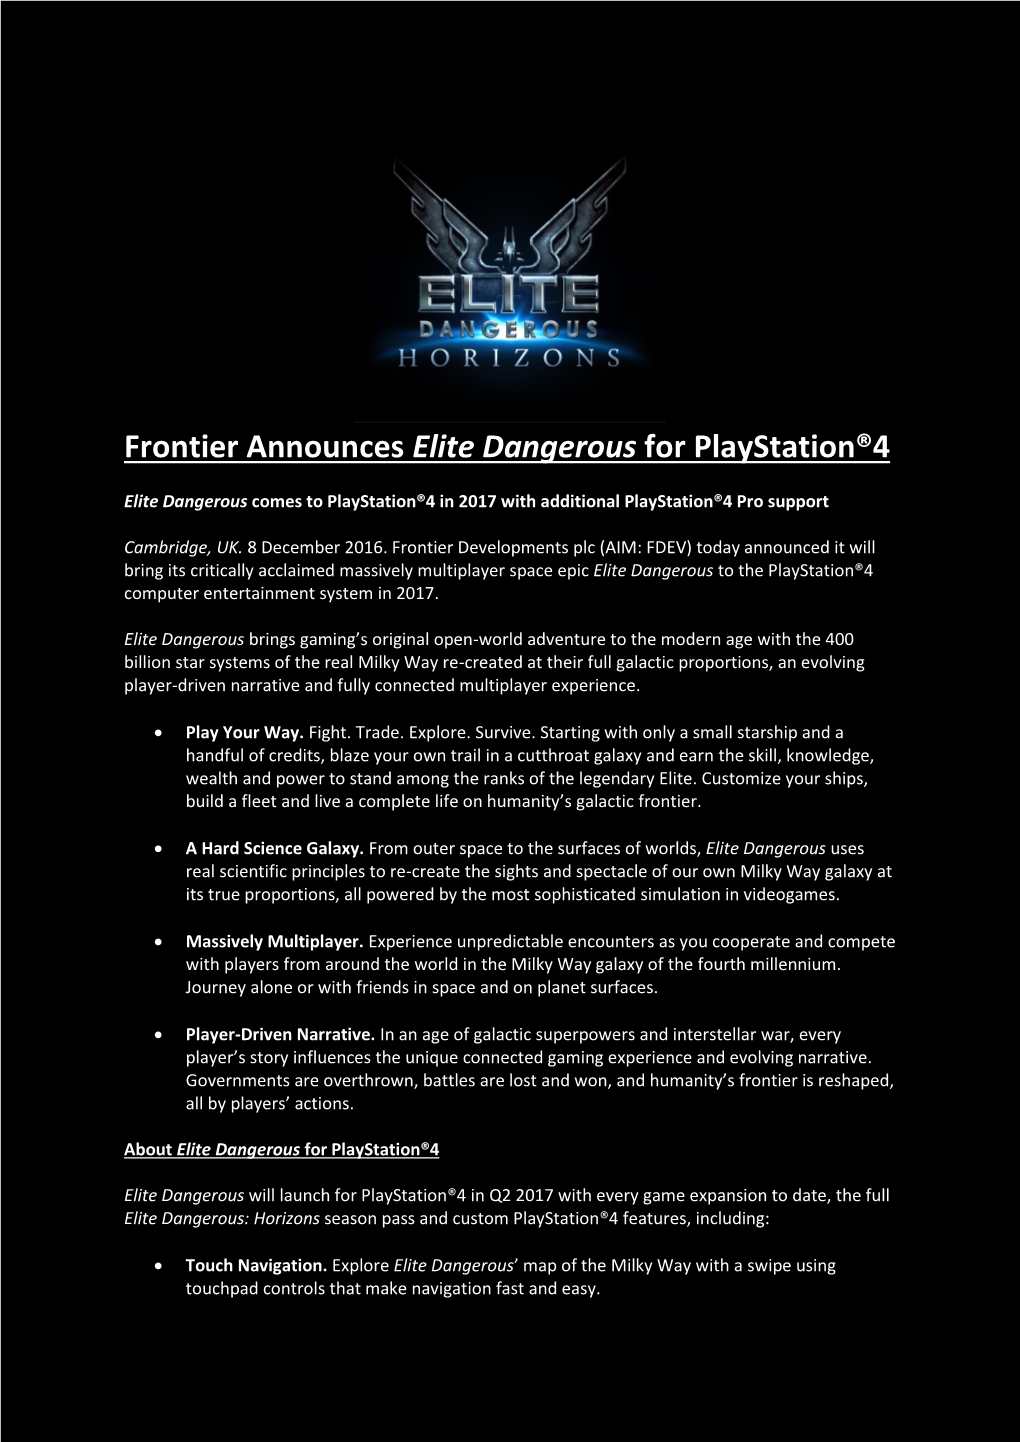 Frontier Announces Elite Dangerous for Playstation®4